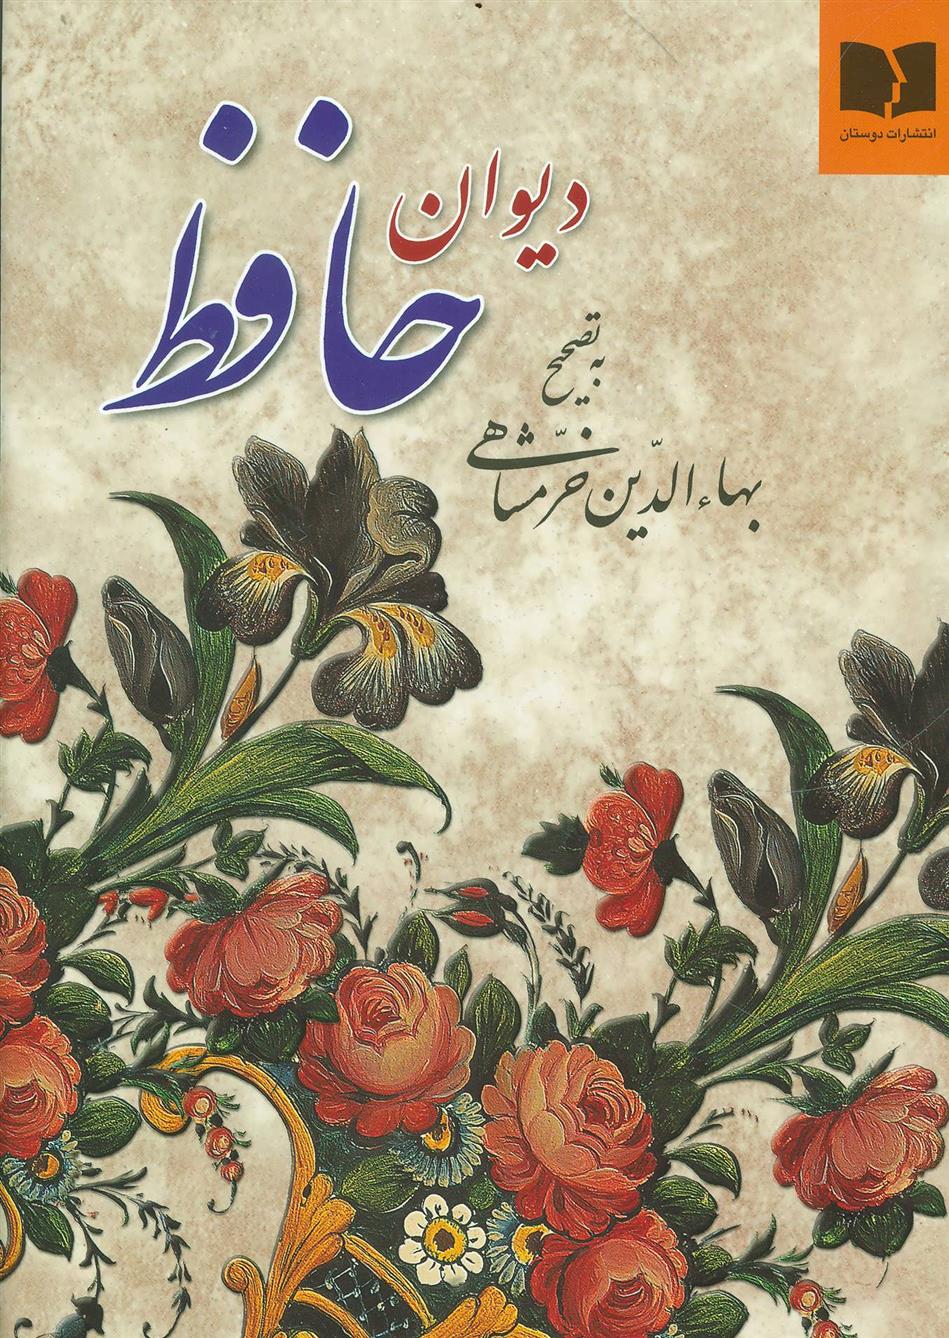 کتاب دیوان حافظ (وزیری);